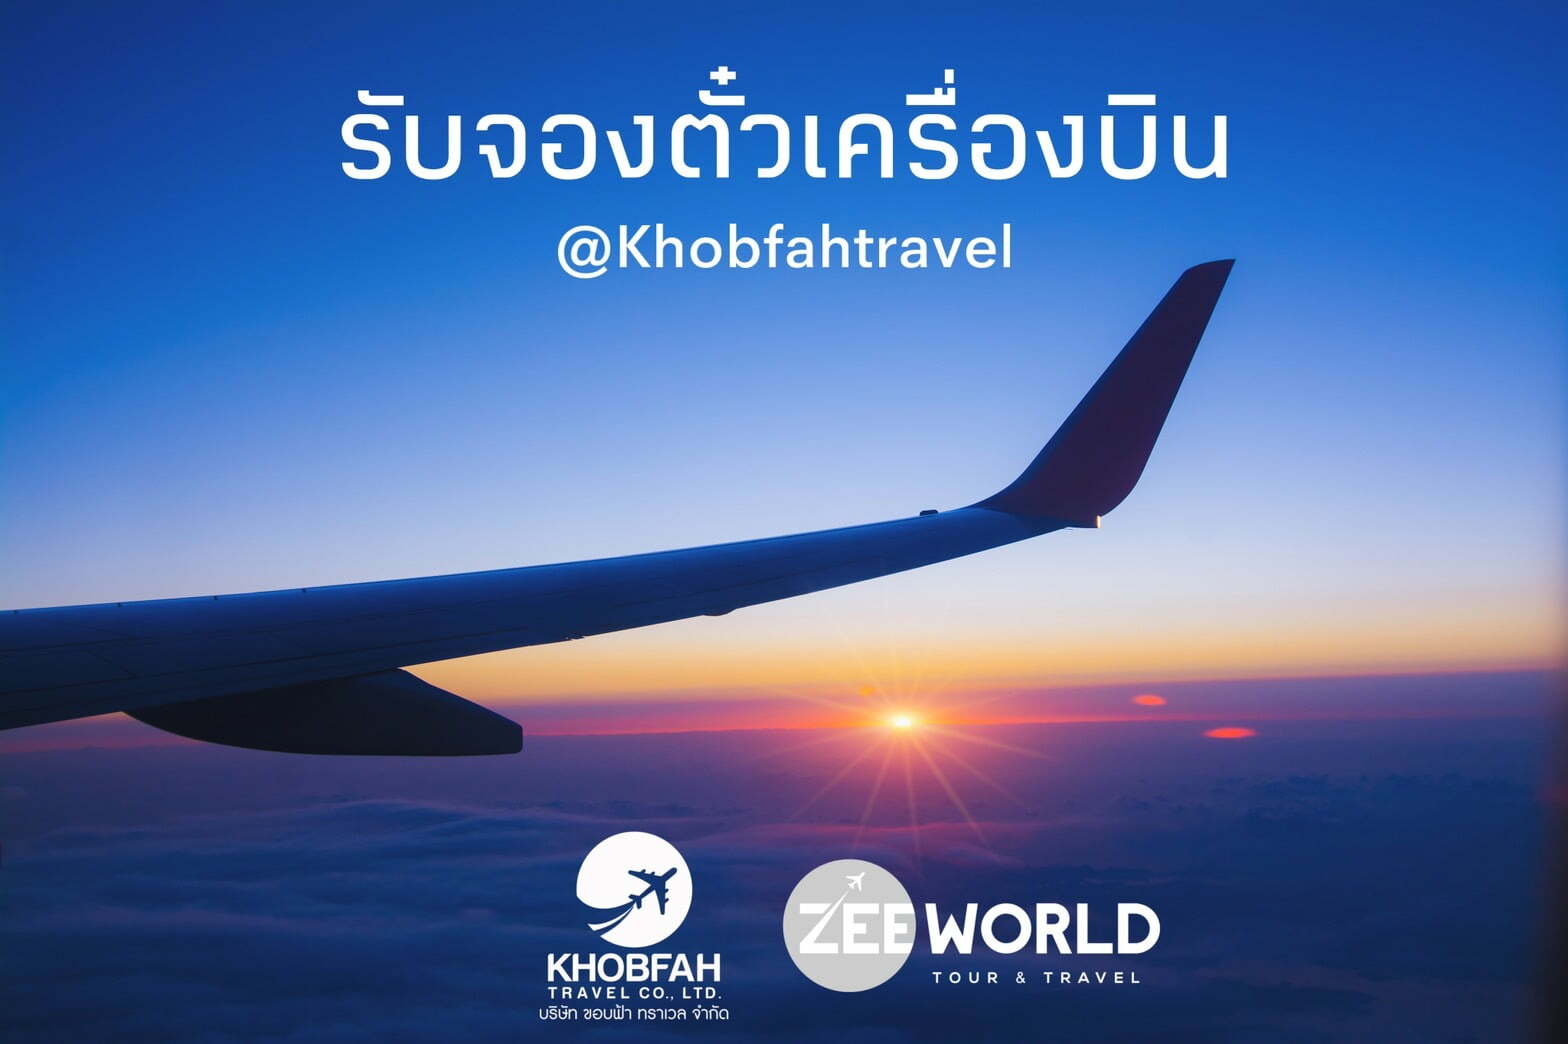 ราคาตั๋วเครื่องบิน ราคาตั๋วโปรโมชั่น สำหรับเดินทางกลับประเทศไทย